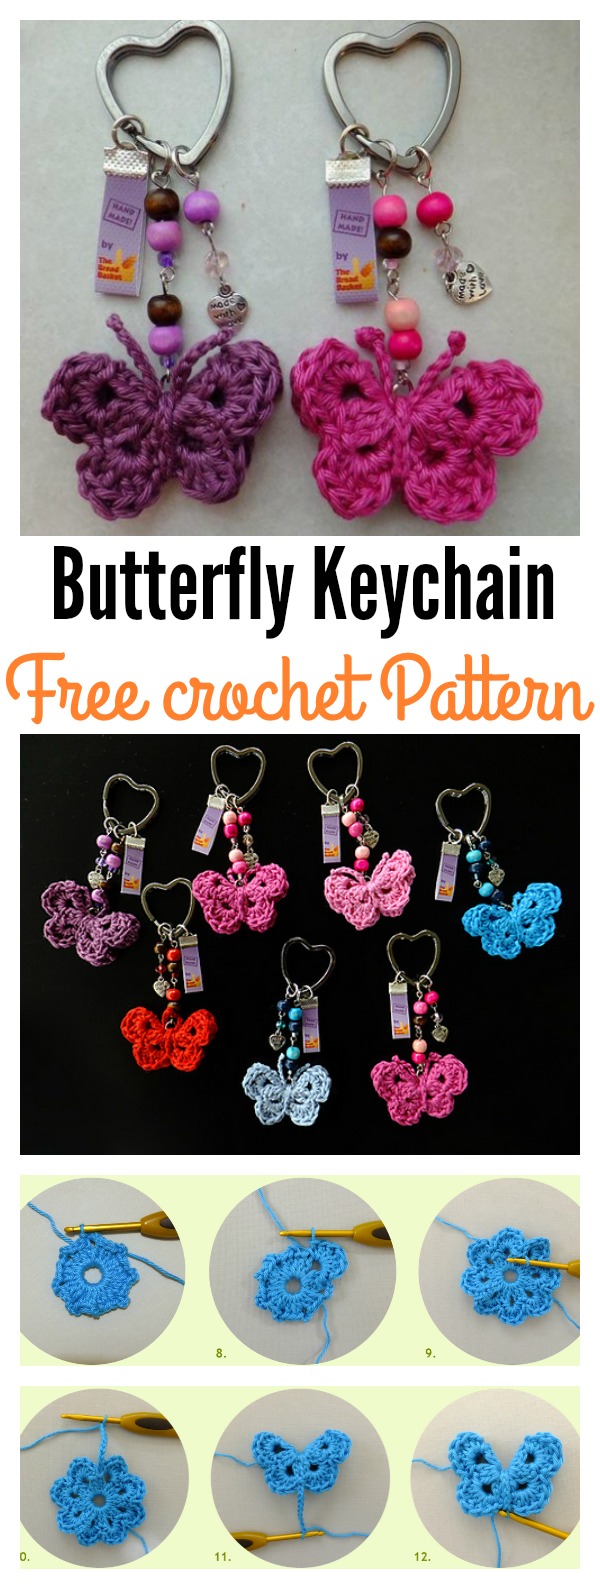 Crochet Butterfly Keychain Free Pattern